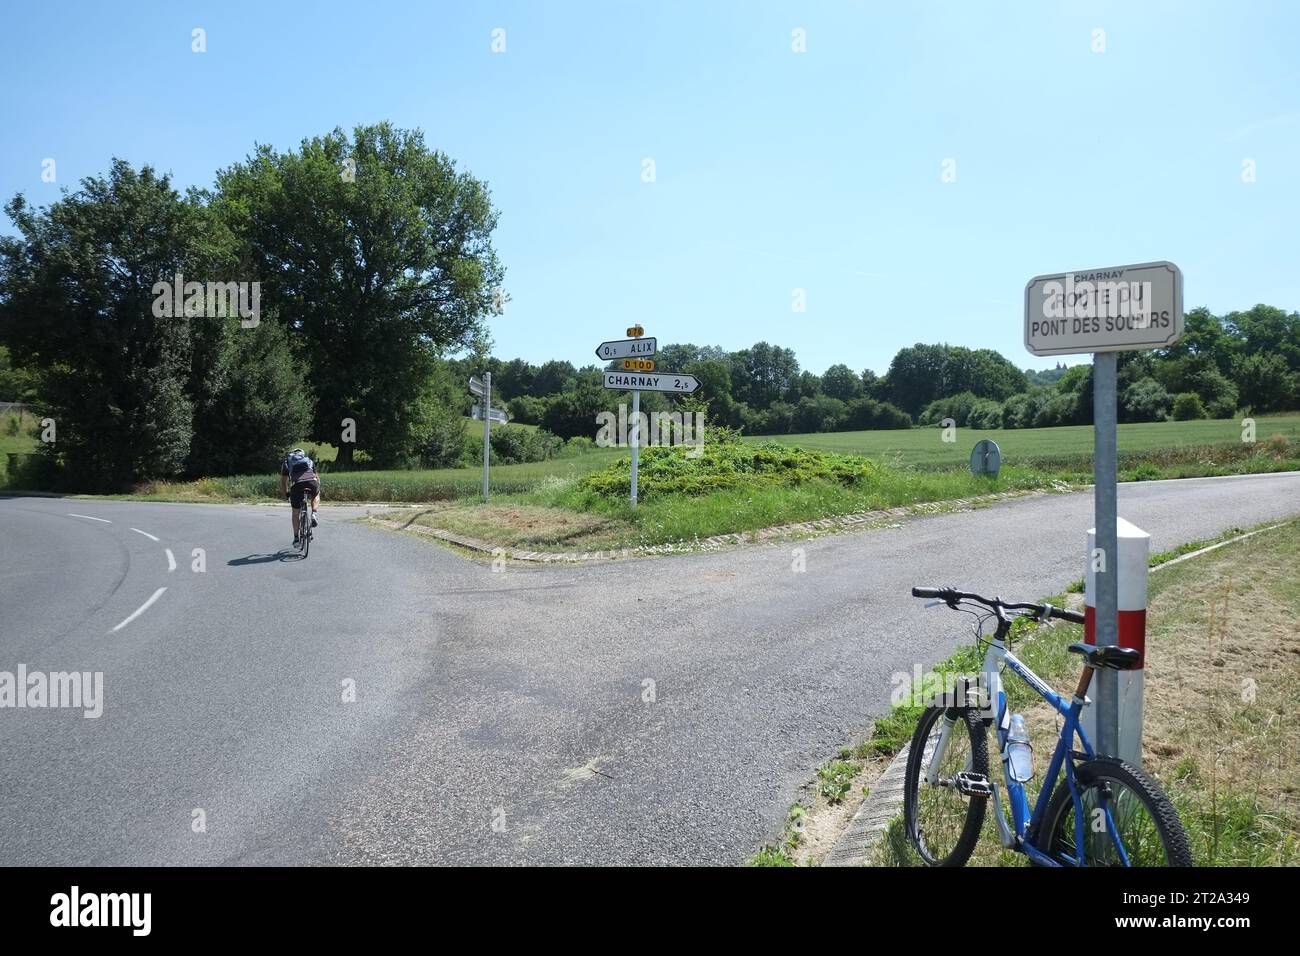 Ein Radfahrer überquert eine Abzweigung in der Straße, und ein Fahrrad beugt sich gegen ein Straßenschild, Route du Pont des Soupirs, Bäume, Straßen, ein Schild nach Charnay in Rhône Frankreich Stockfoto